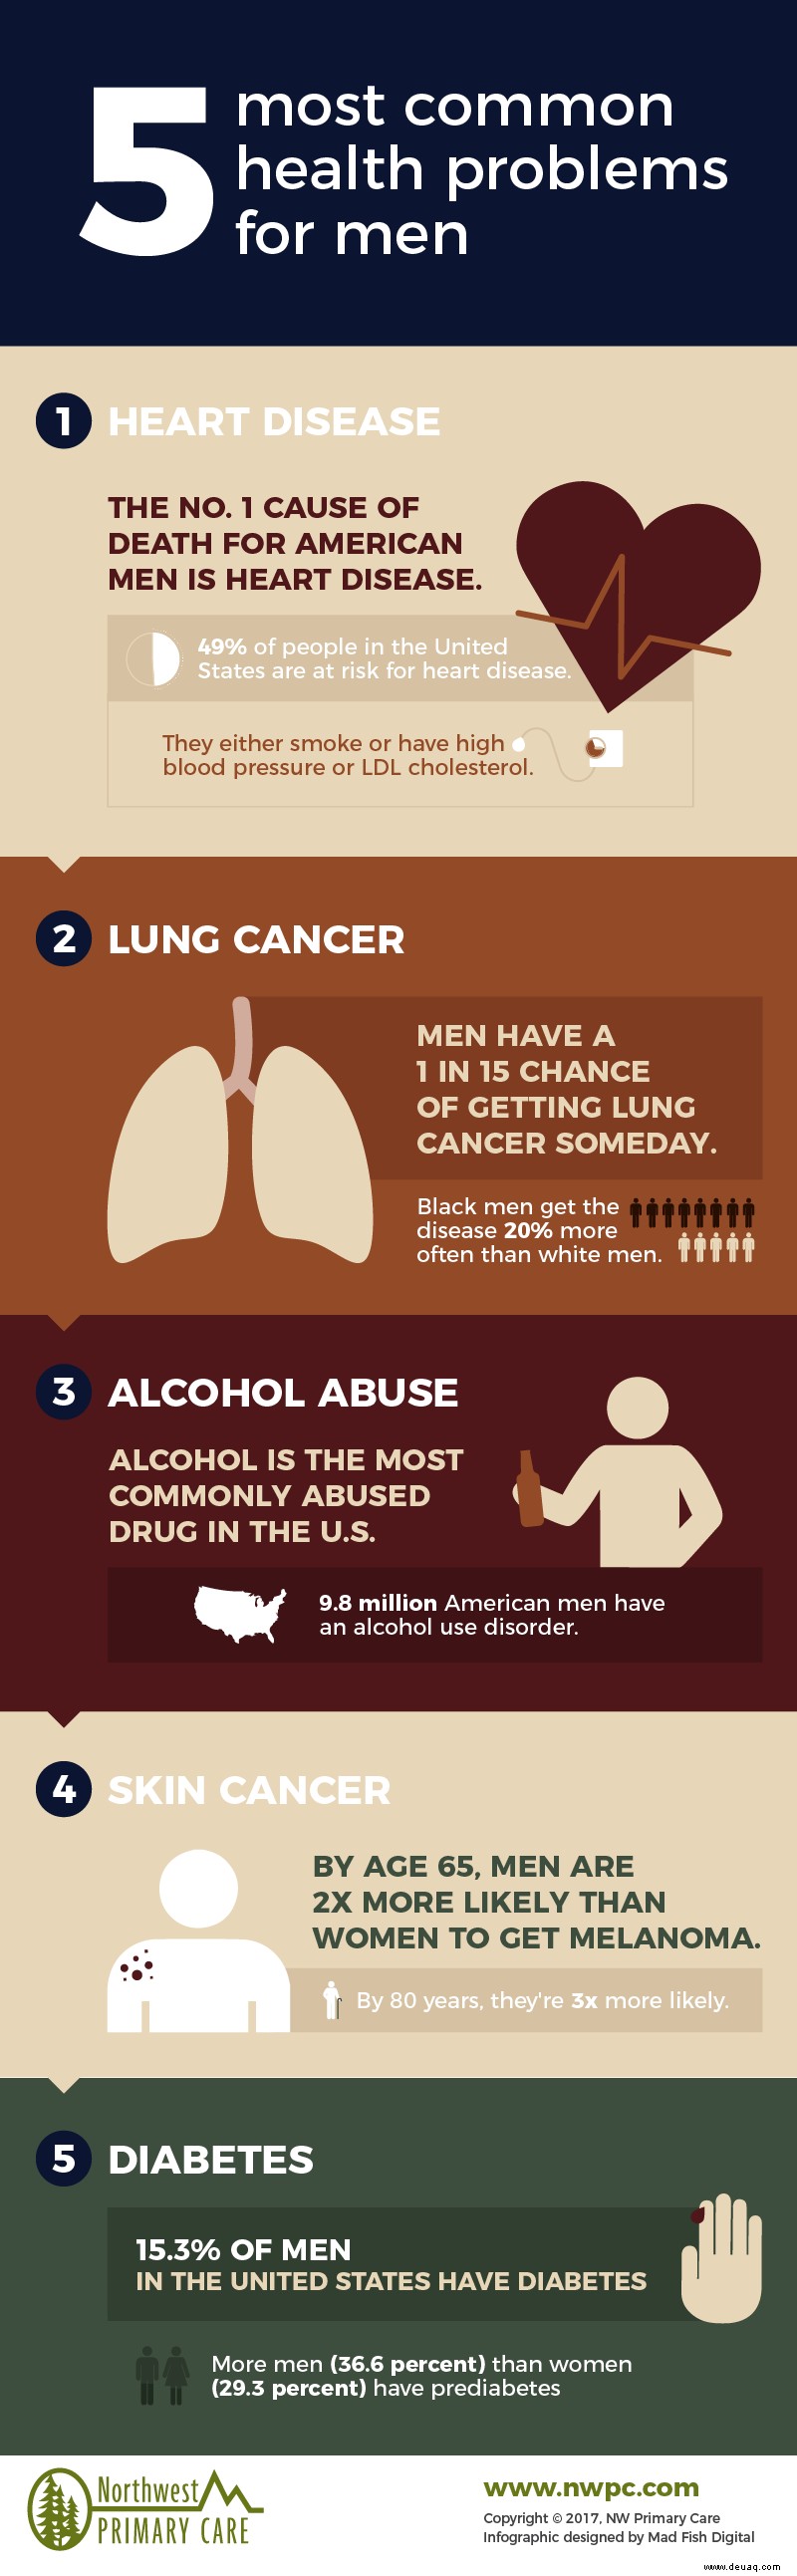 5 häufige Gesundheitsprobleme bei Männern und was man dagegen tun kann [Infografik]